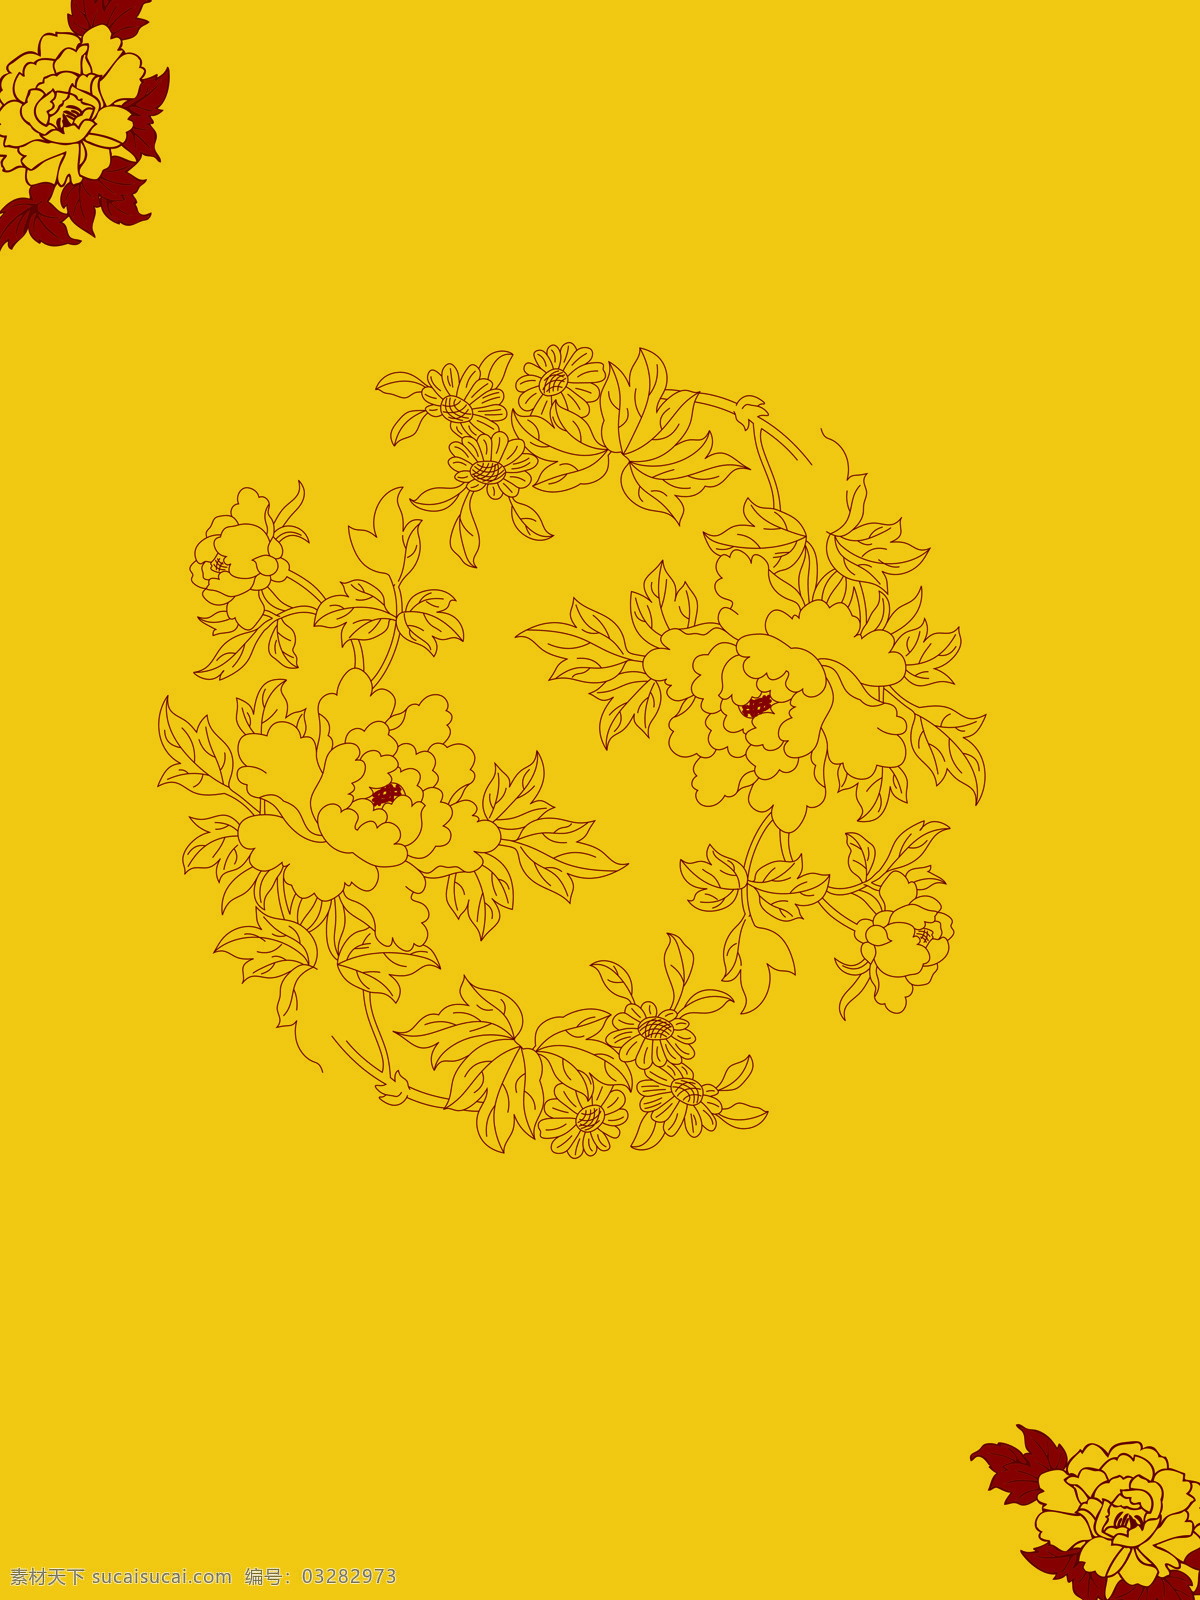 牡丹底纹 牡丹 线条 花纹 黄色 底纹 移门 玫瑰 花边 底纹边框 背景底纹